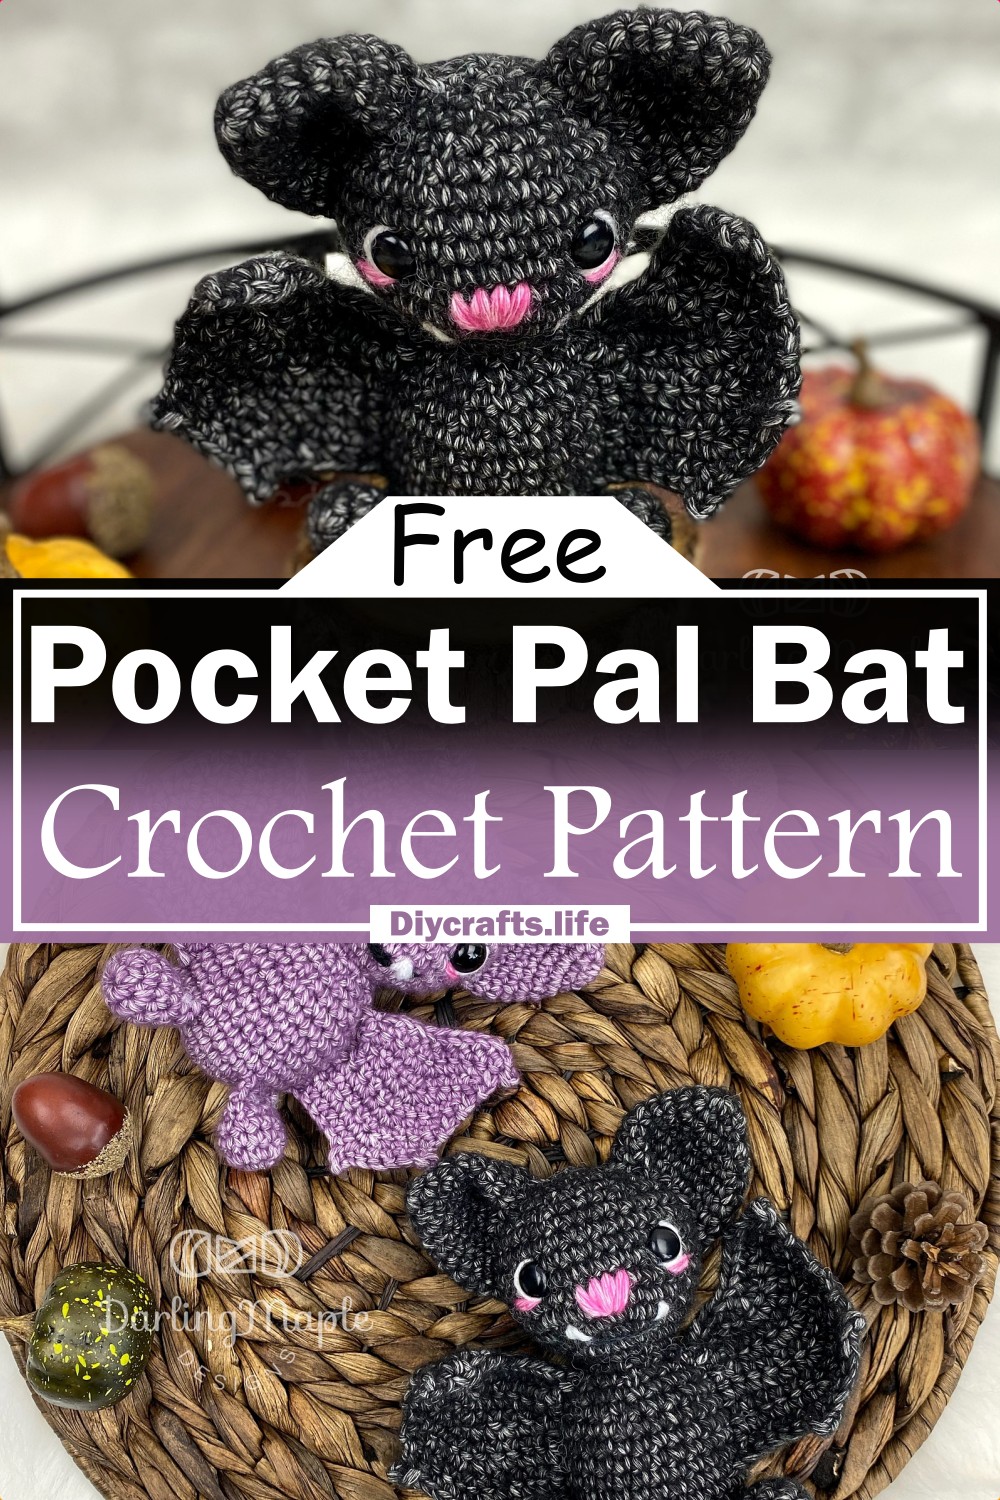 Pocket Pal Bat